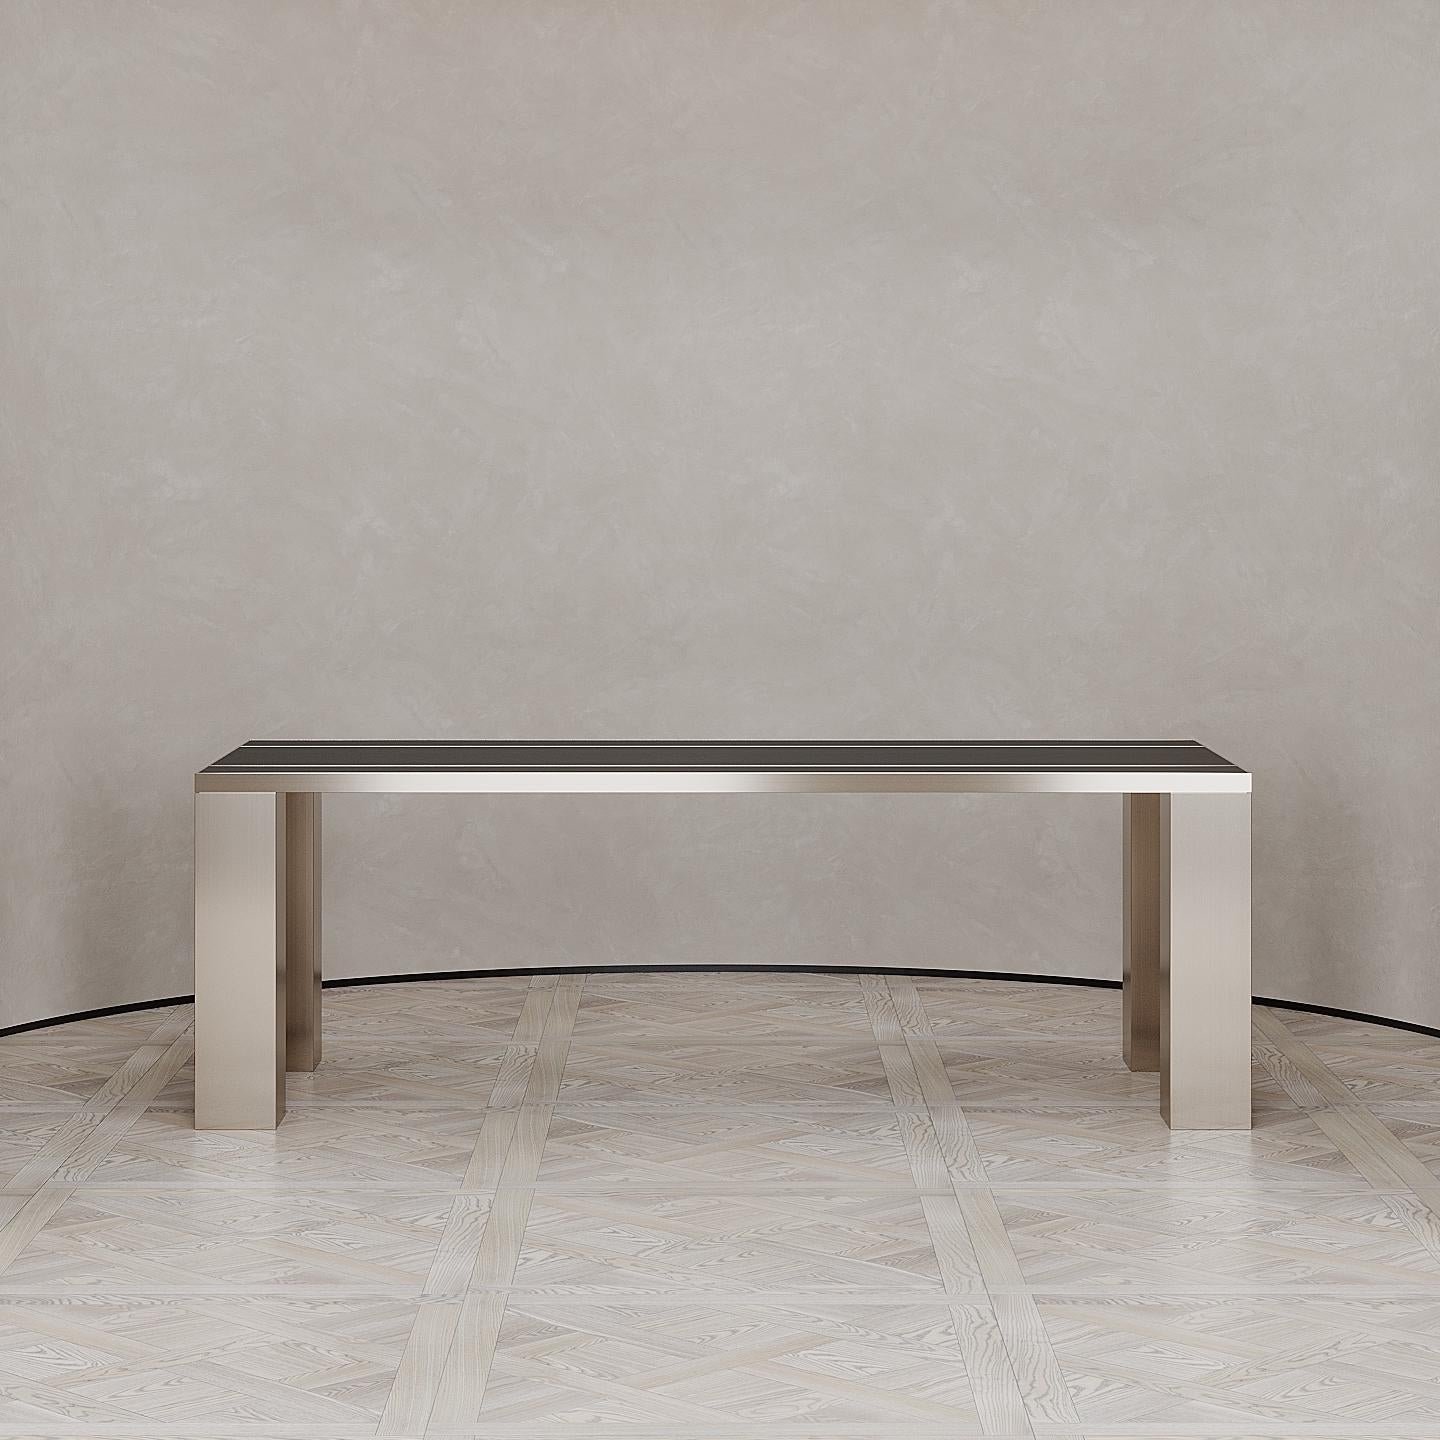 Der Penumbra Esstisch wurde von Emél & Browne im minimalistischen und zeitgenössischen Stil entworfen und in Italien von erfahrenen Handwerkern hergestellt. Die leuchtenden Kupferbeine des Penumbra-Esstisches strahlen die Energie des